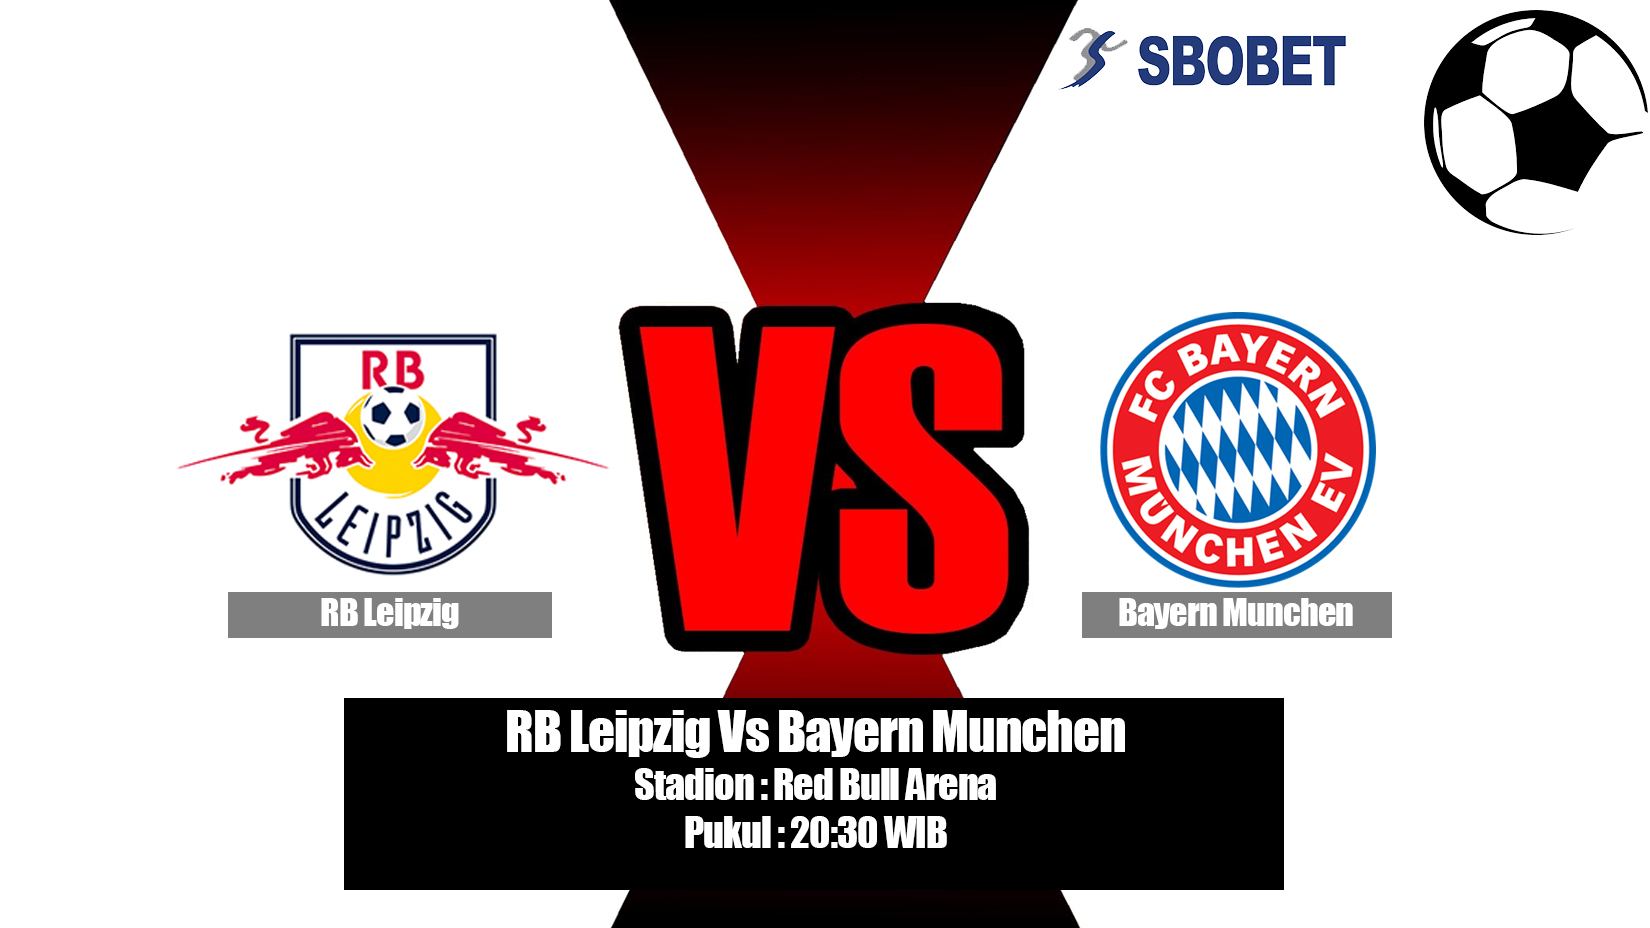 Prediksi Bola RB Leipzig Vs Bayern Munchen 11 Mei 2019